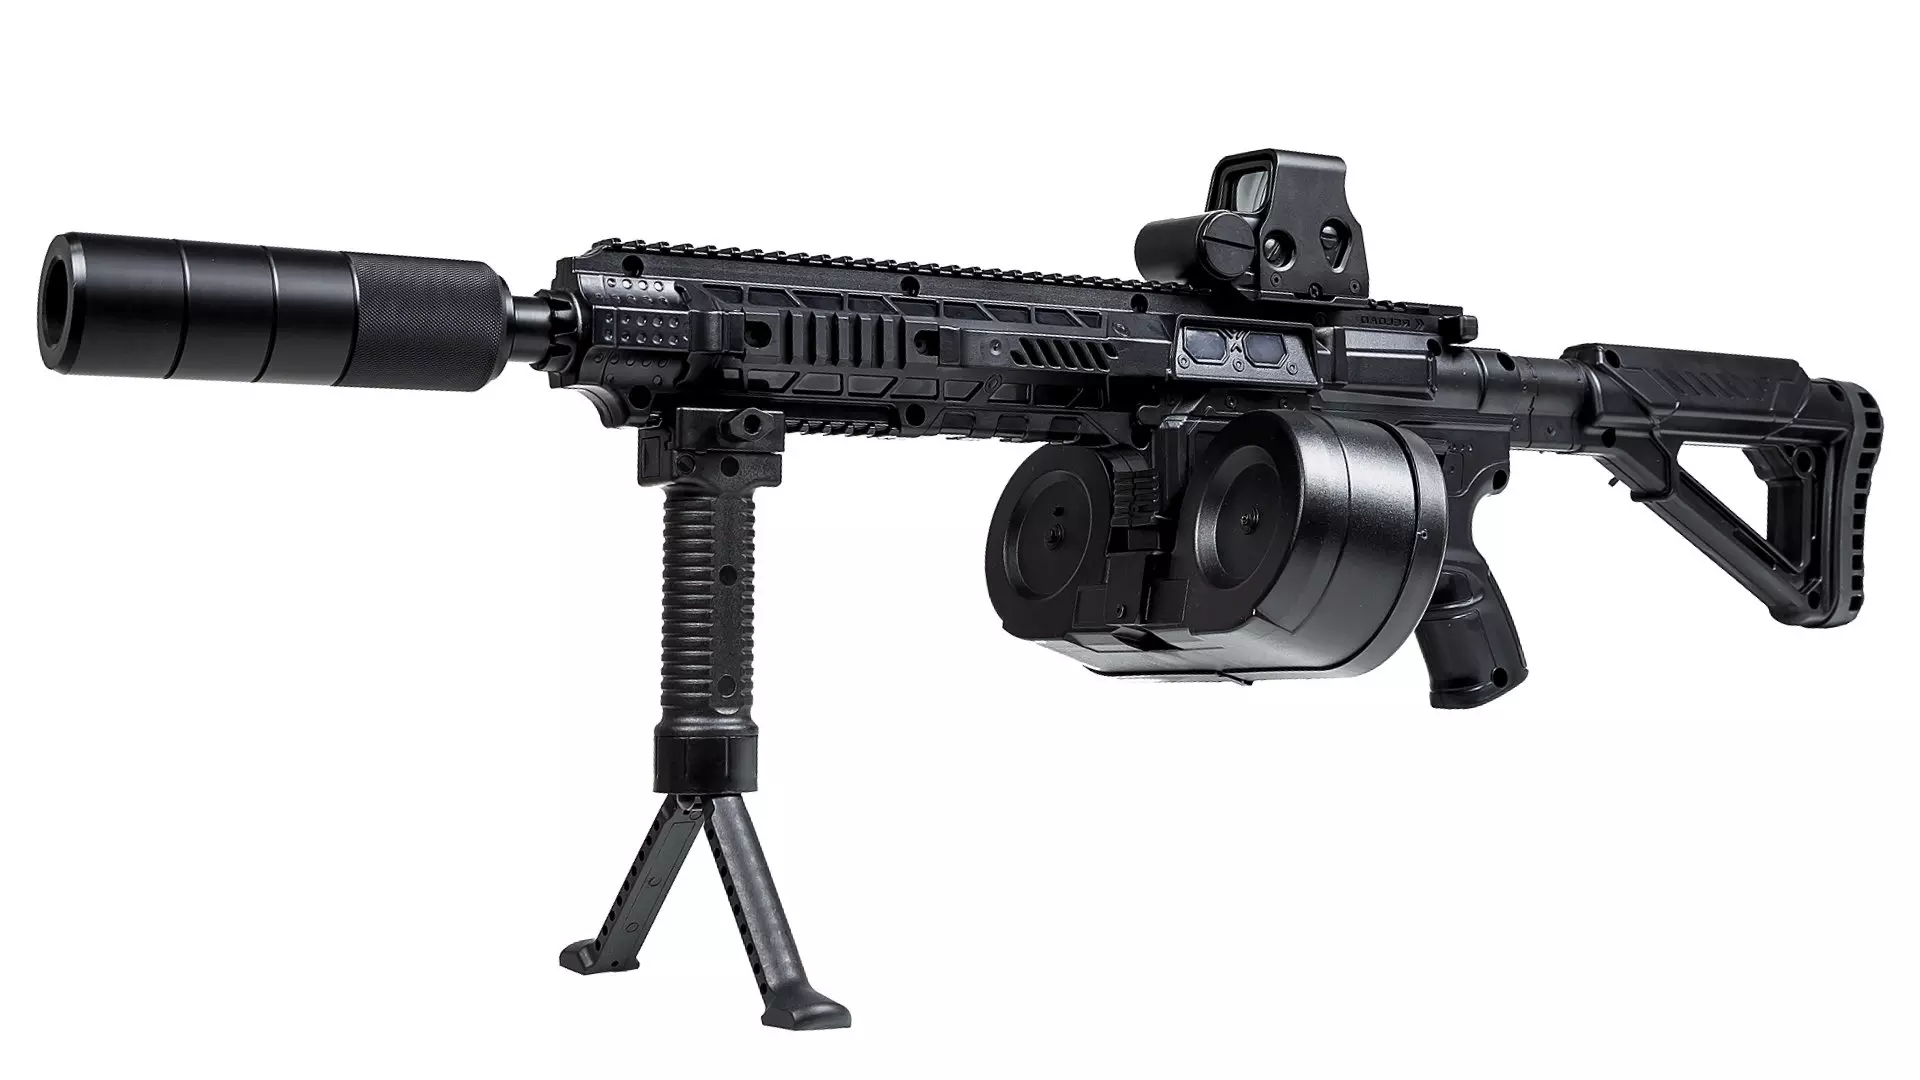 Berserk Laser tag machine gun from LASERWAR USA 